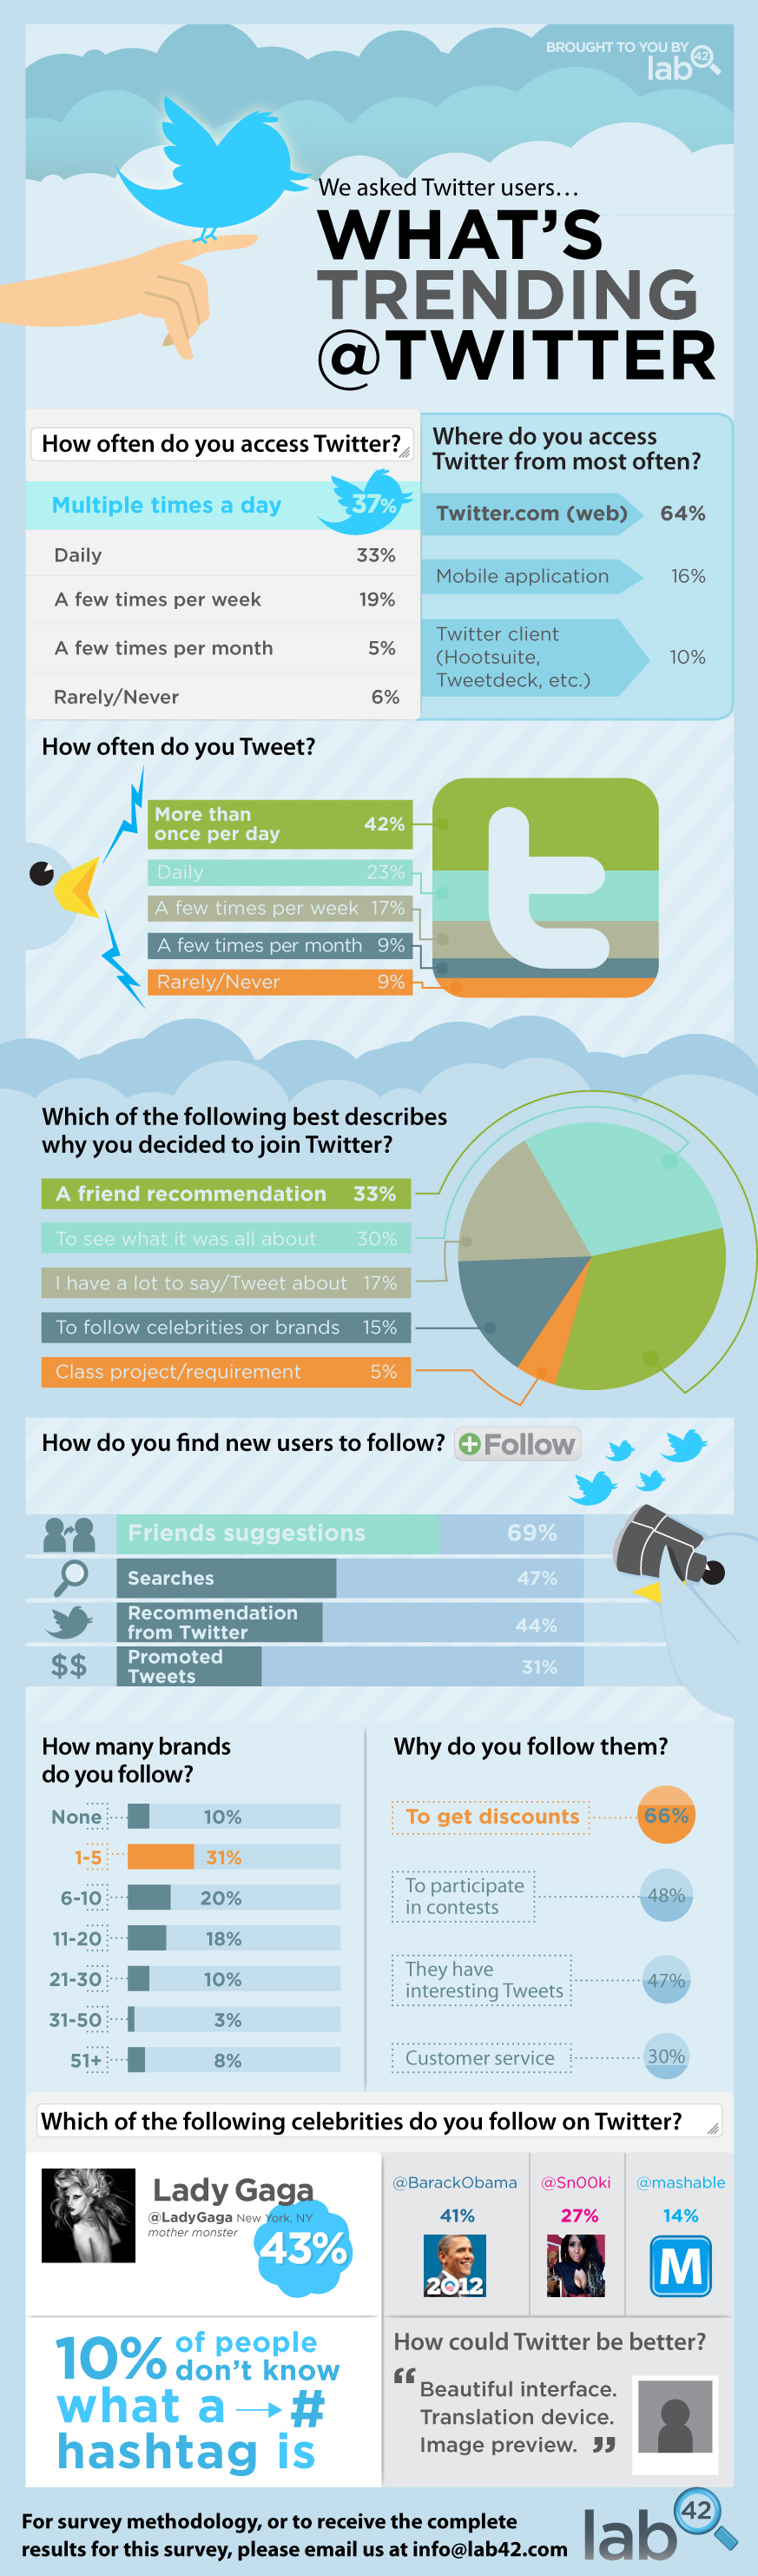 Come Viene Usato Twitter - Infografica